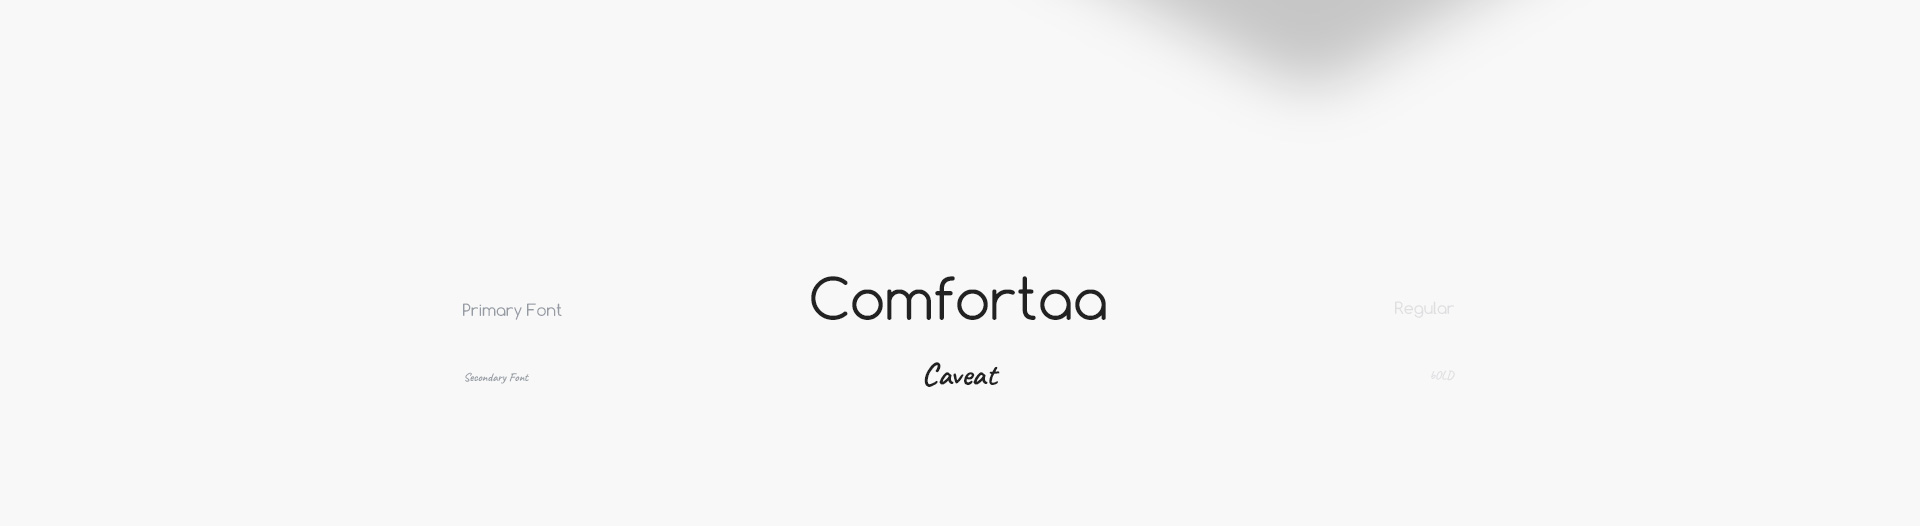 comforta to font użyty w stronie danmis